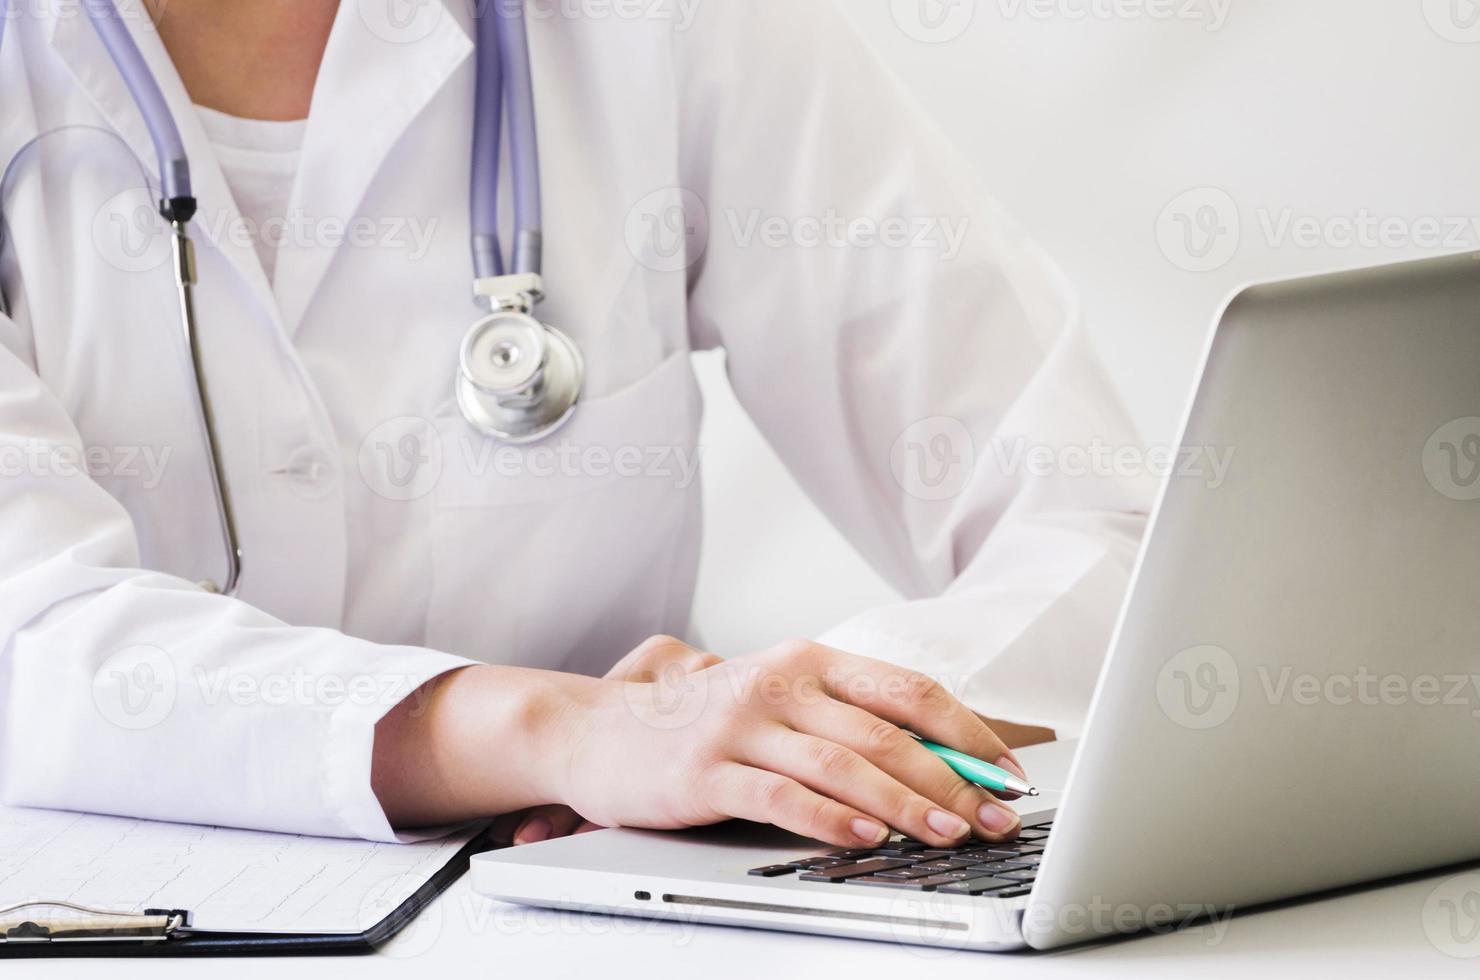 dottoressa con lo stetoscopio al collo utilizzando la scrivania del computer portatile foto